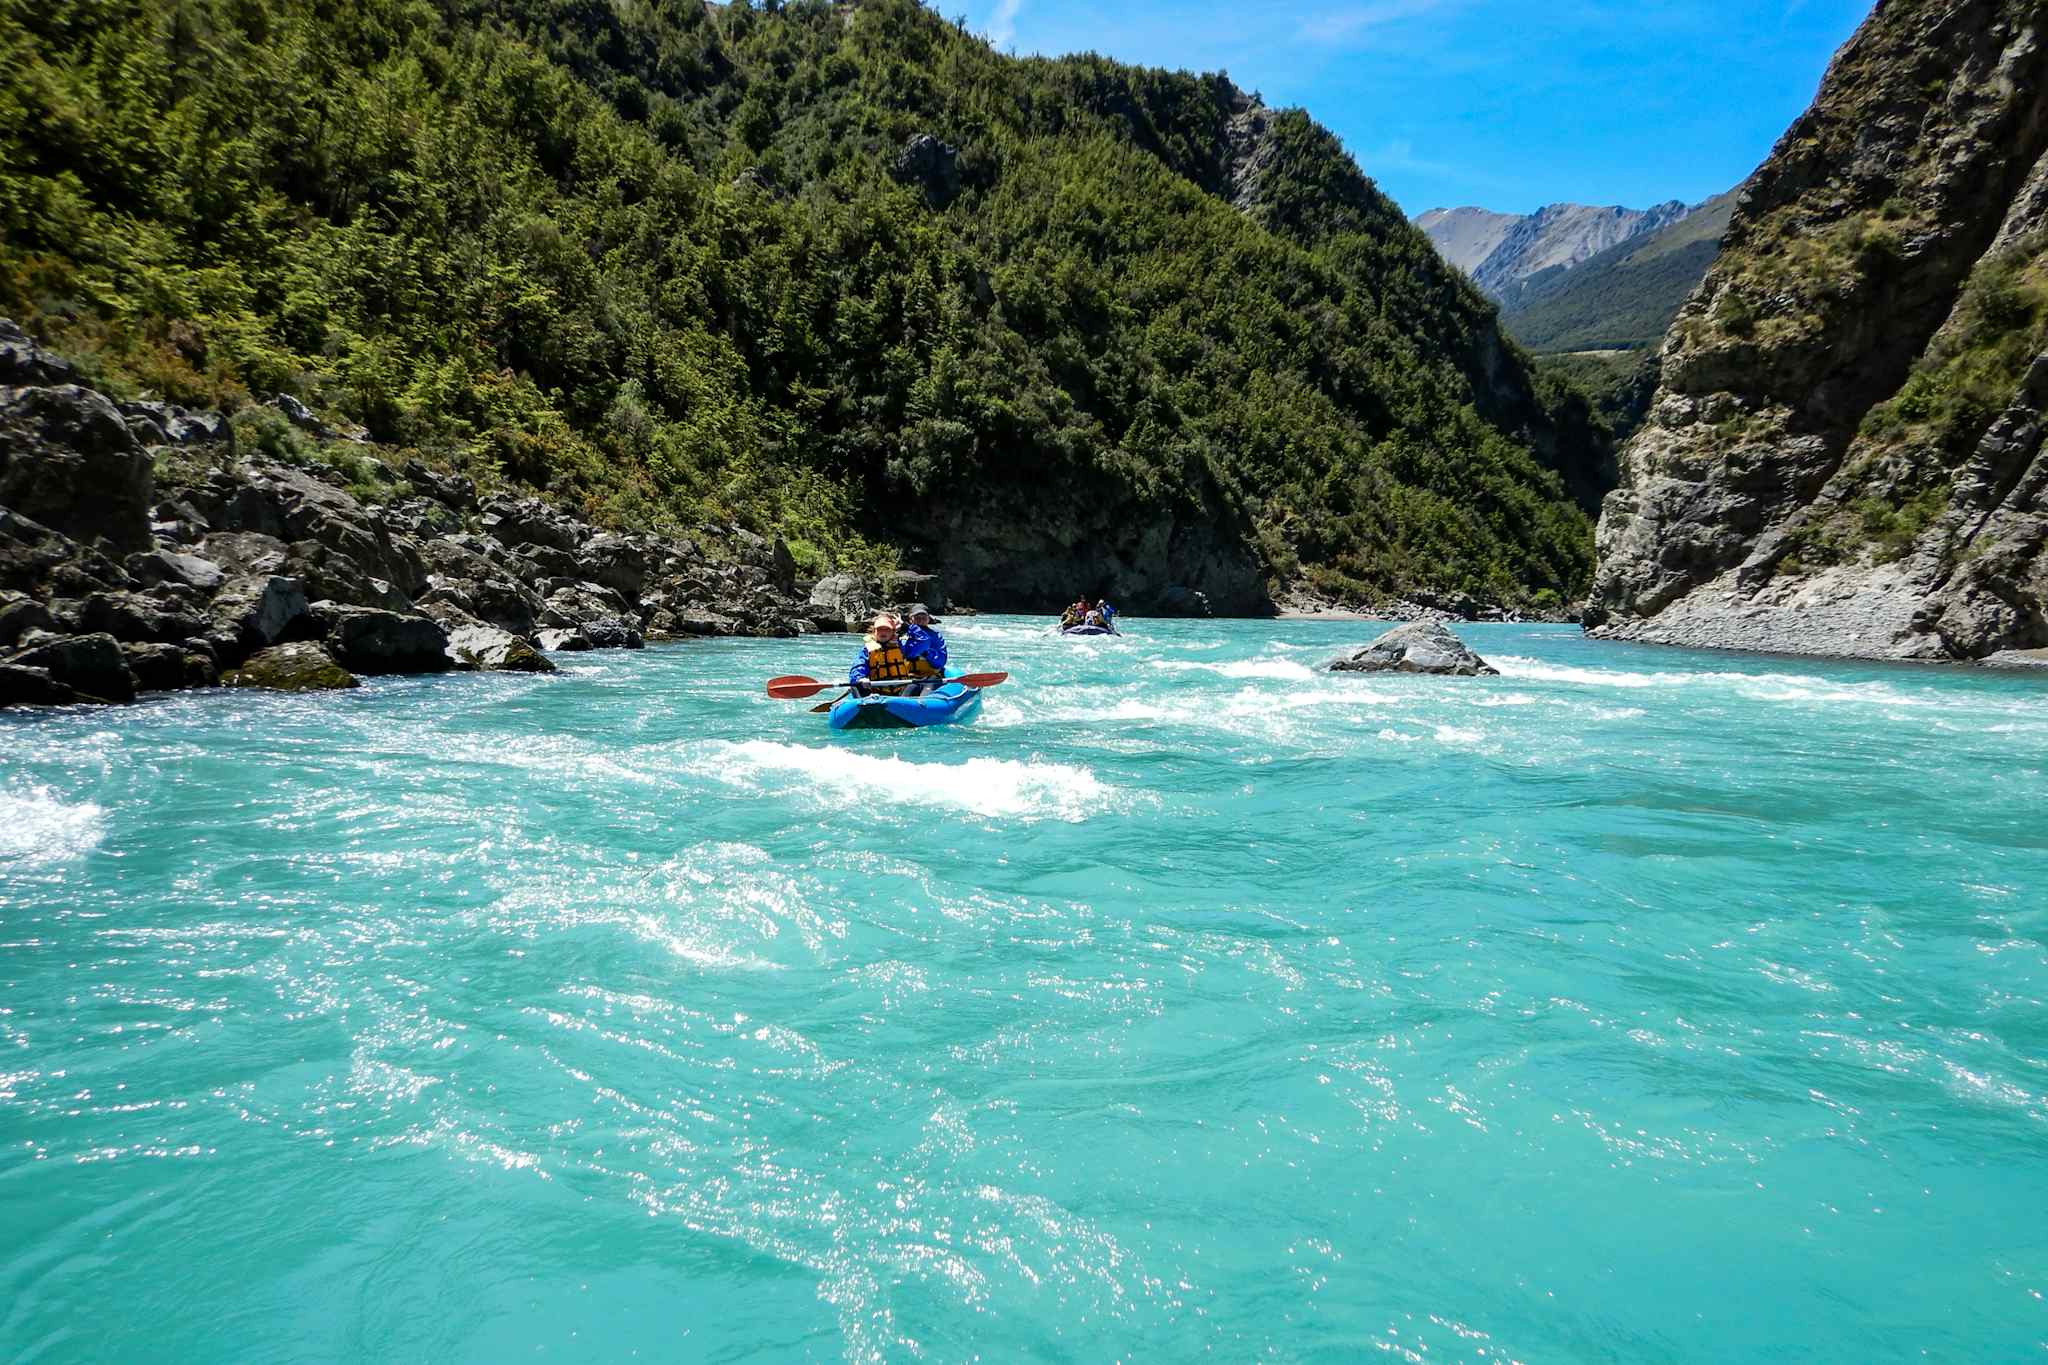 Rafting the Waimakariri River in New Zealand